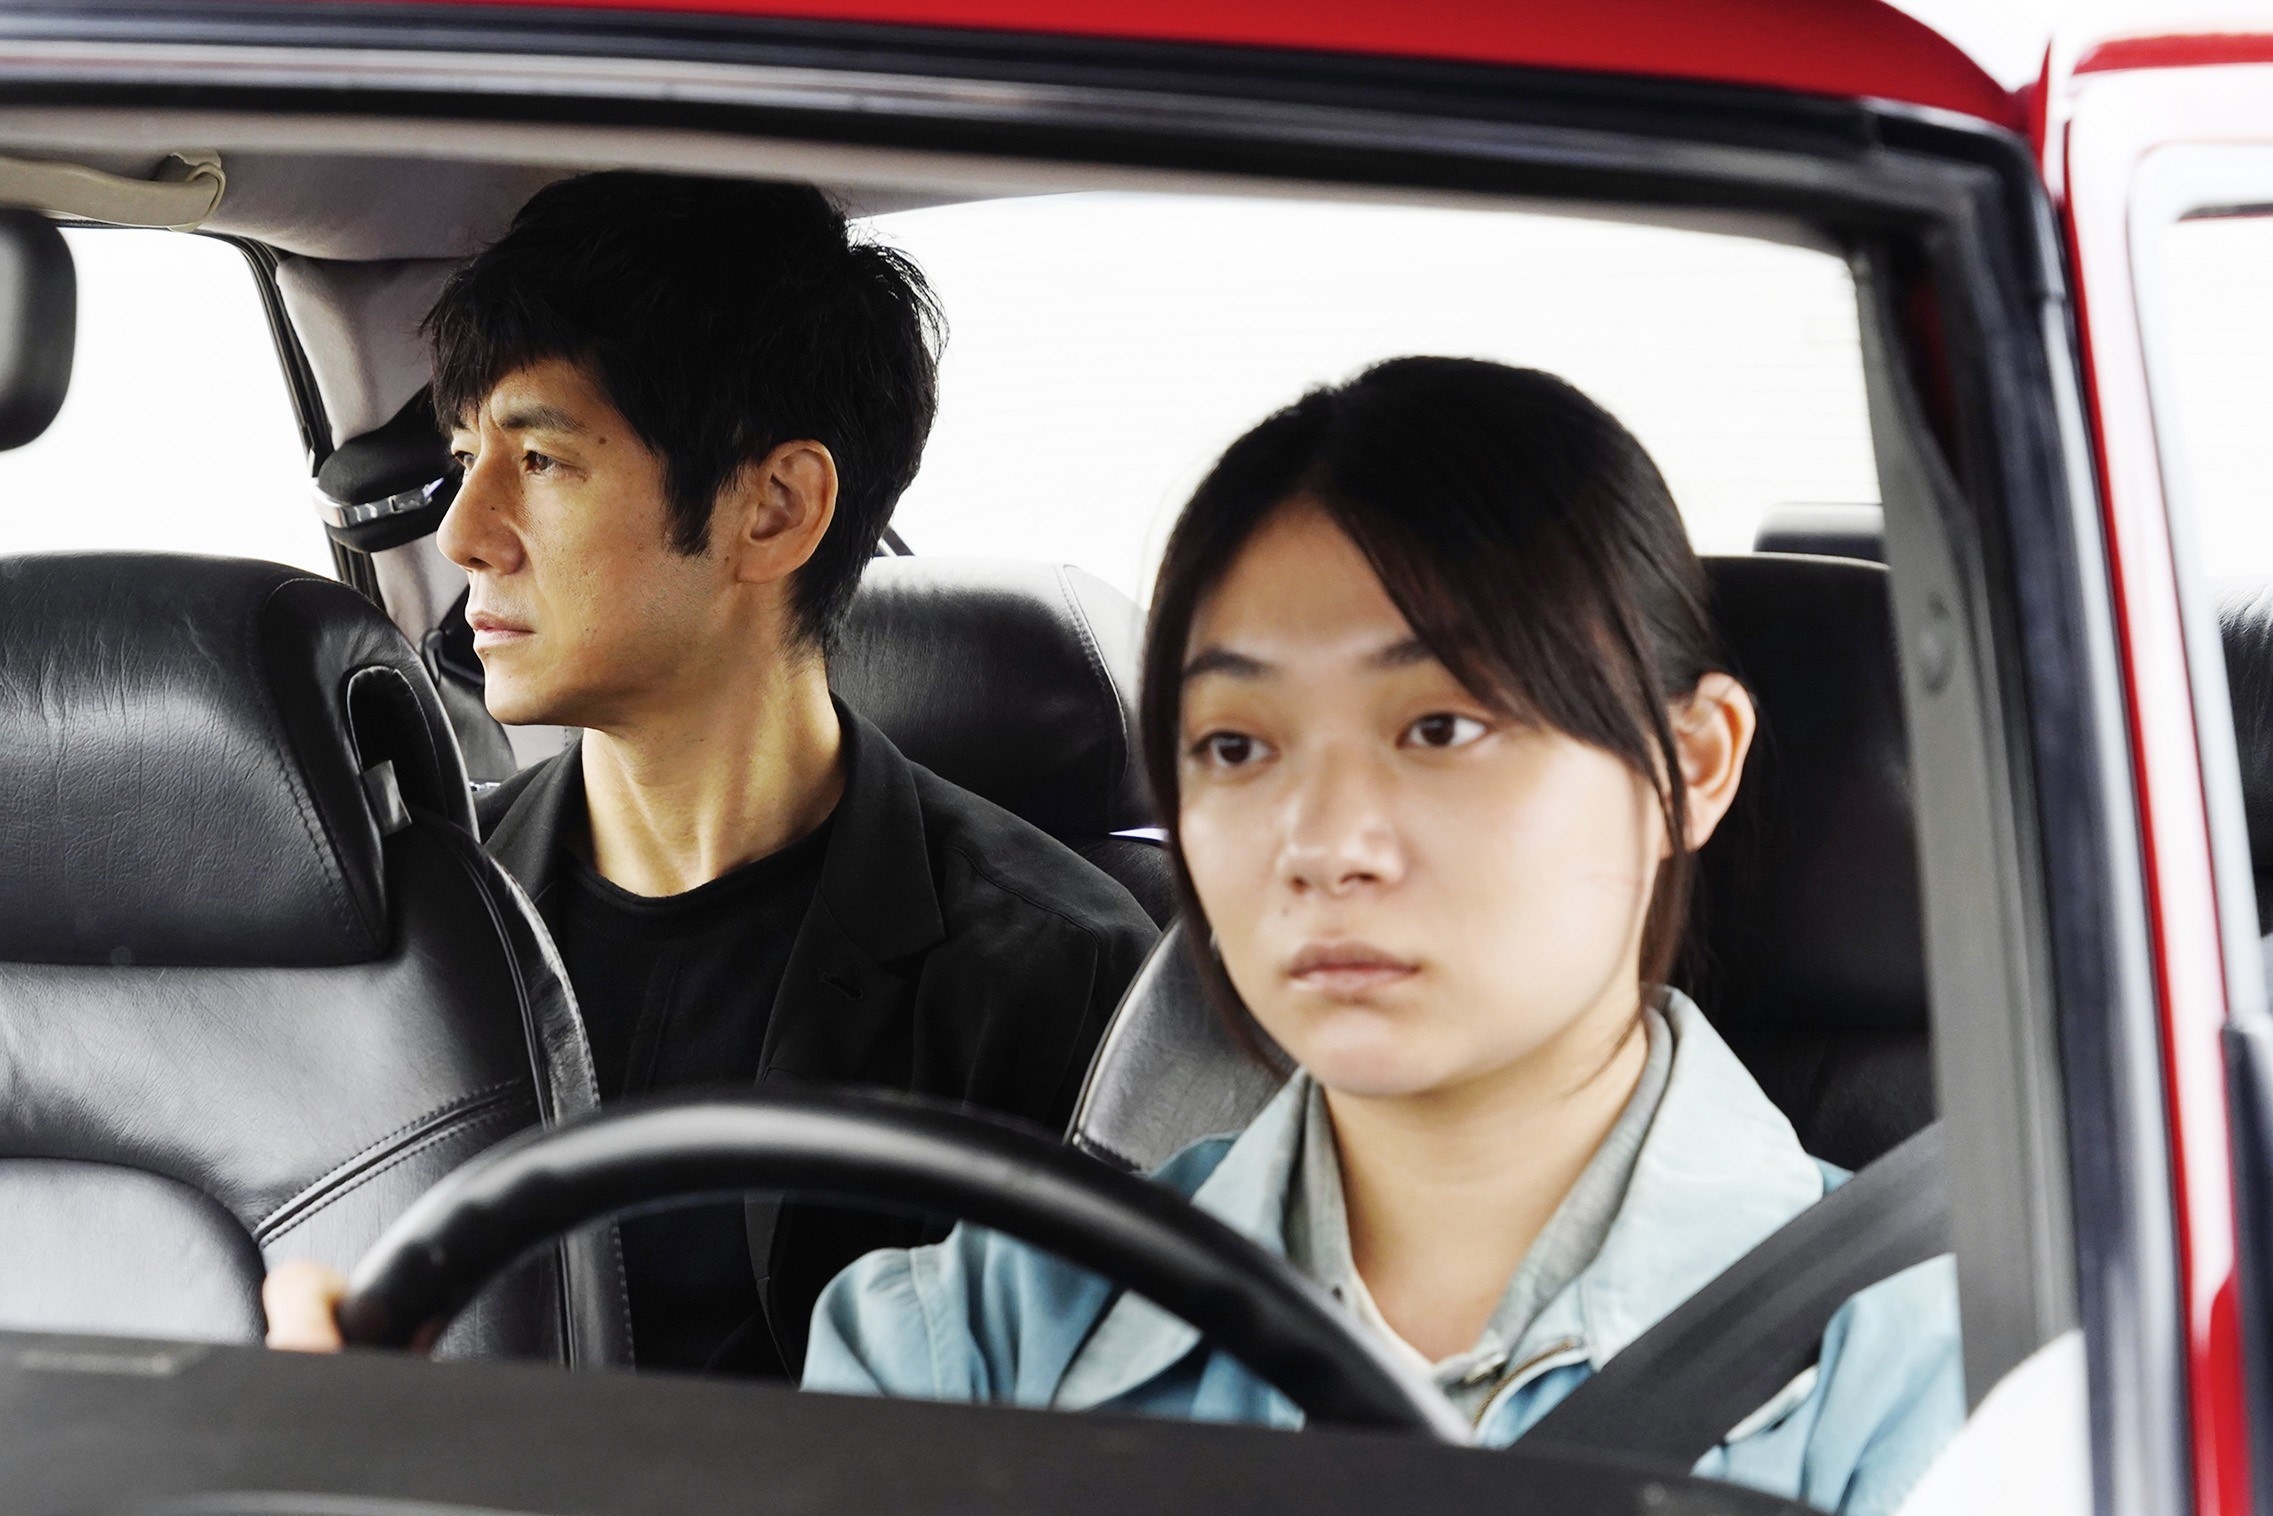 Hidetoshi Nishijima and Toko Miura sit in a car